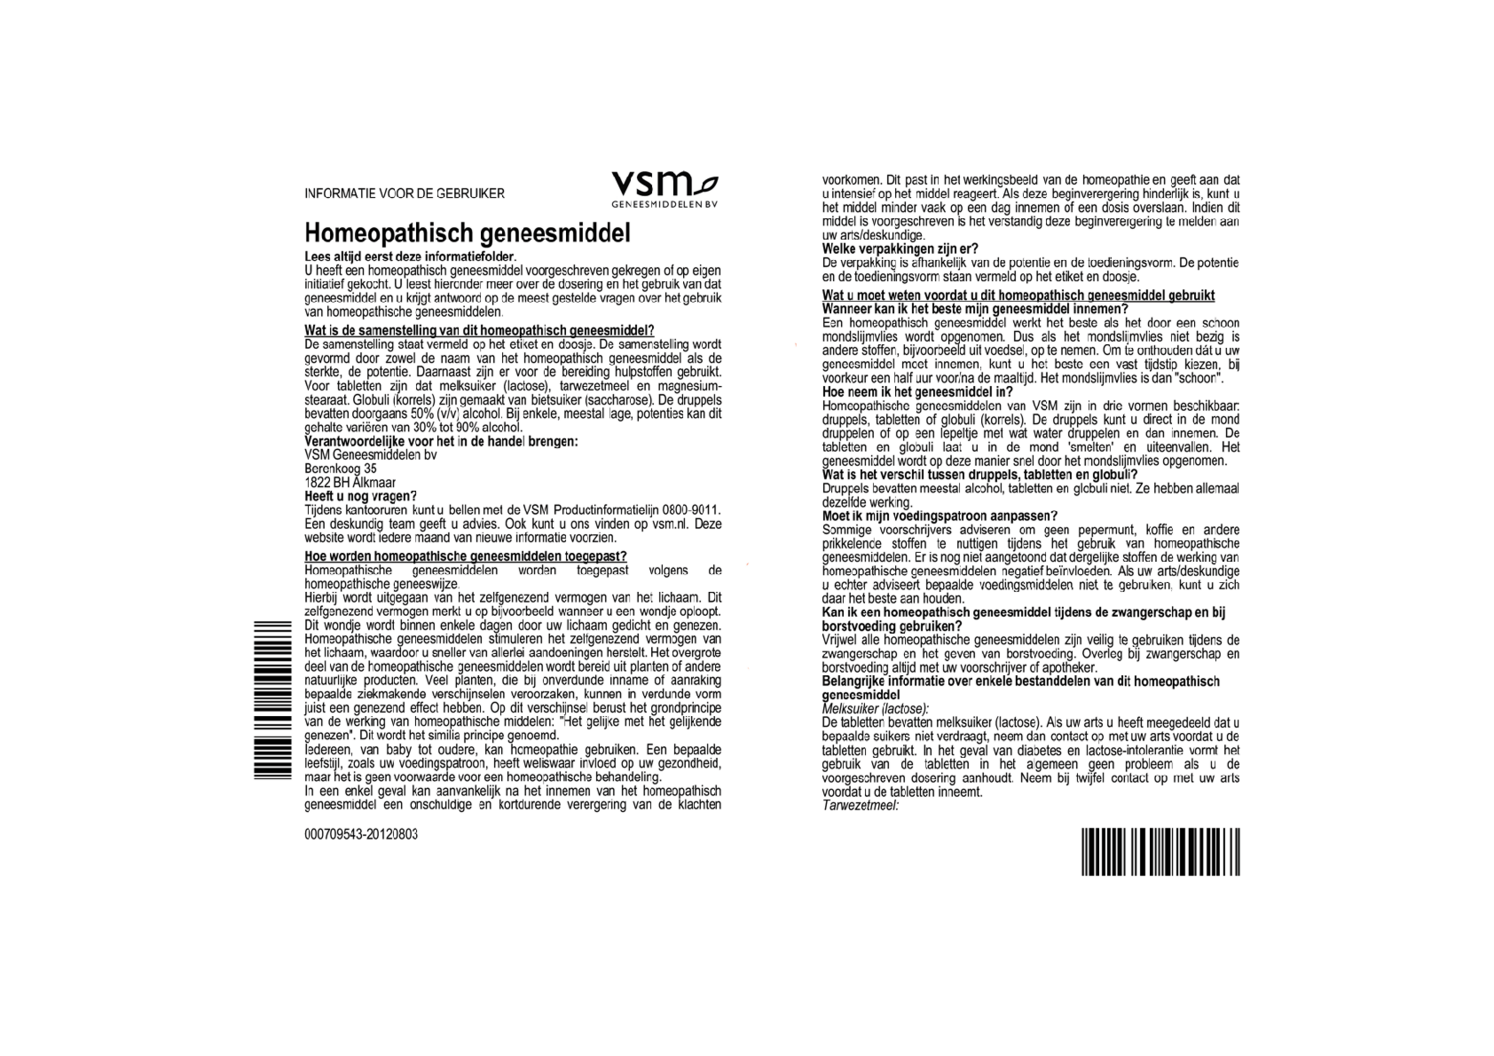 Sepia Officinalis D12 Tabletten afbeelding van document #1, bijsluiter